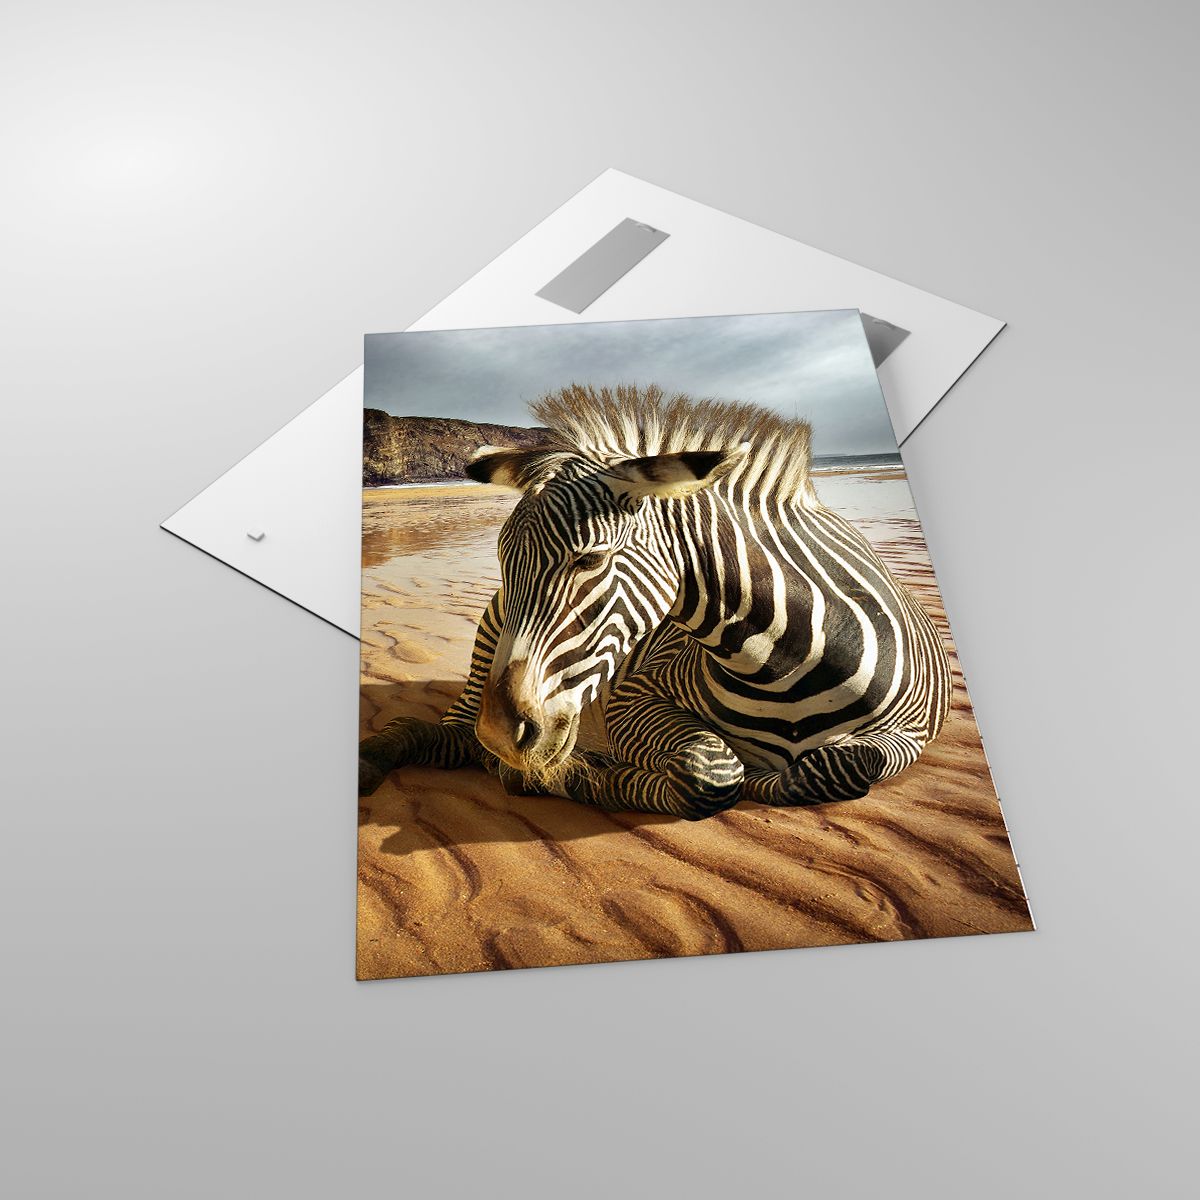 Glasbild Rippen, Glasbild Tiere, Glasbild Landschaft, Glasbild Afrika, Glasbild Wüste